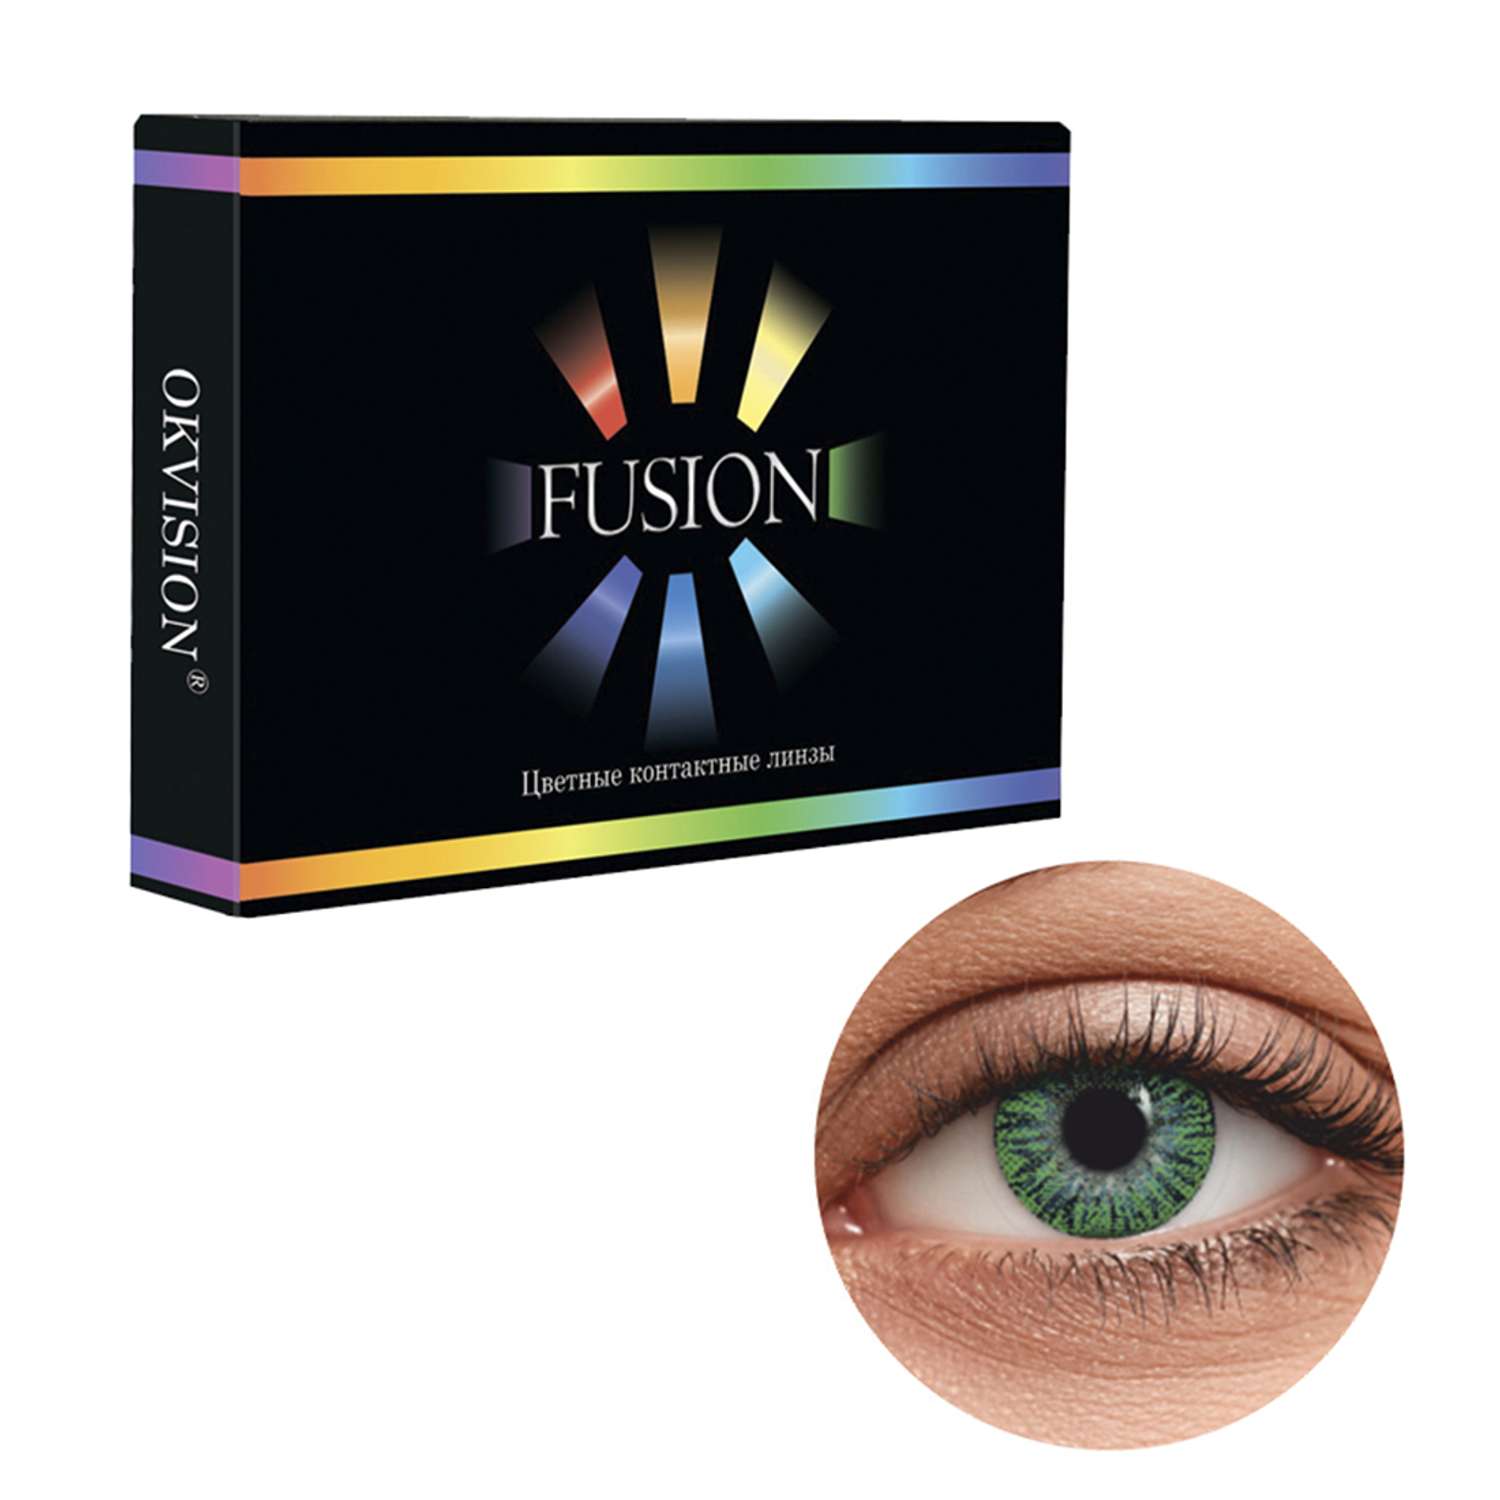 Цветные контактные линзы OKVision Fusion monthly R 8.6 -5.00 цвет Lime 2 шт 1 месяц - фото 1